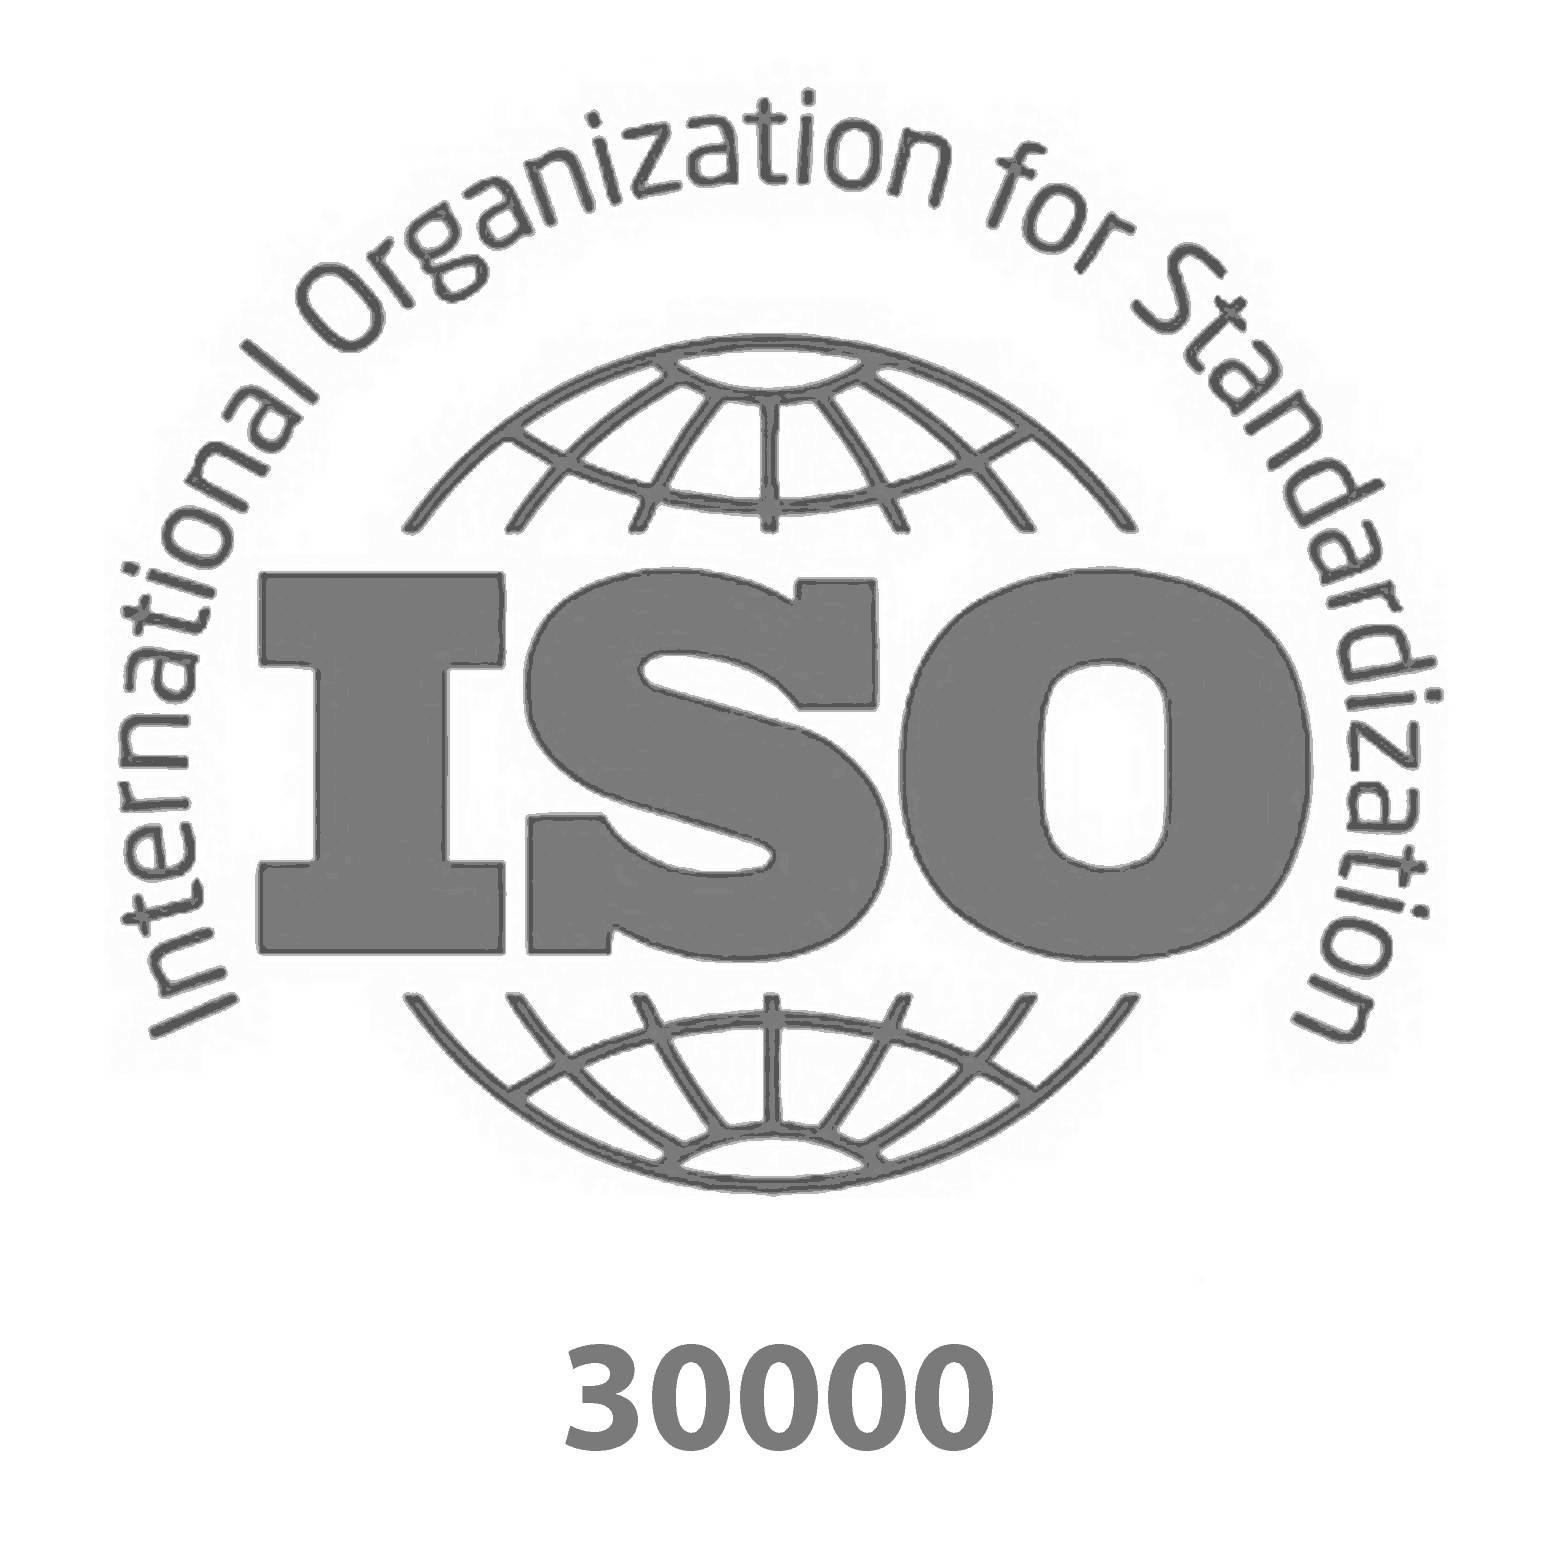 Logo del certificato iso 30000 per la gestione dei servizi navali e tecnologia marina.